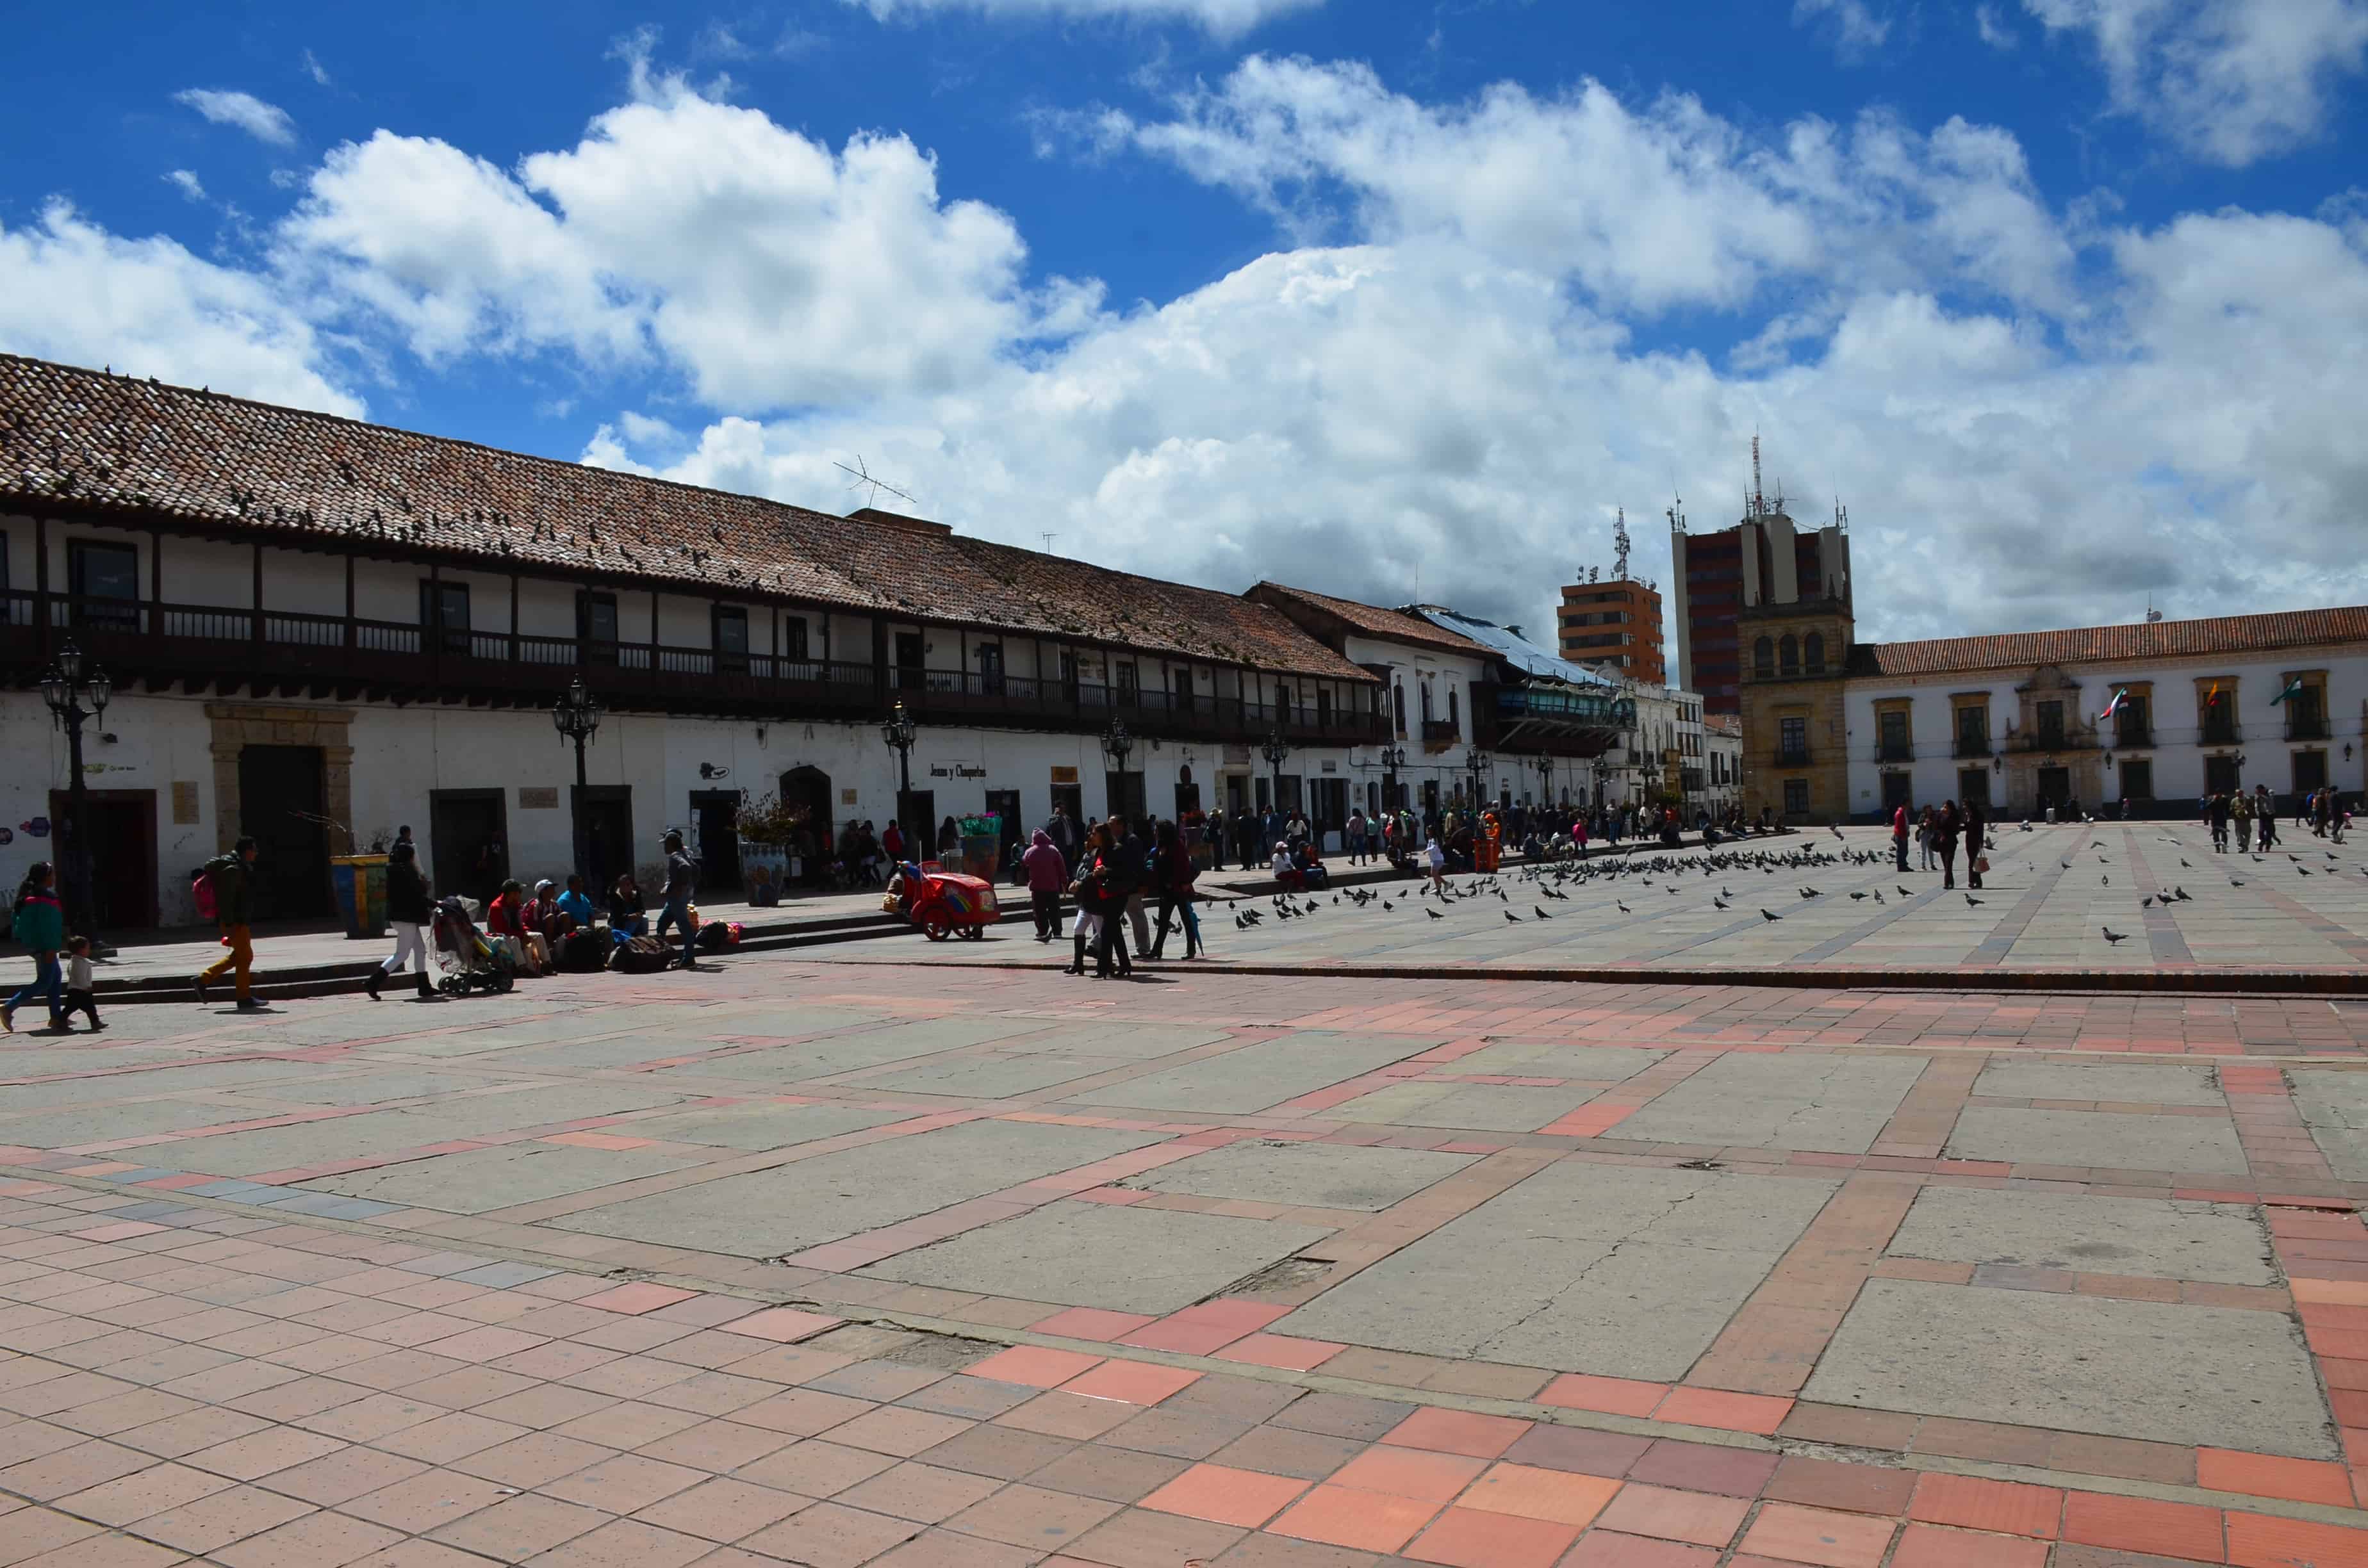 Plaza de Bolívar in Tunja, Boyacá, Colombia